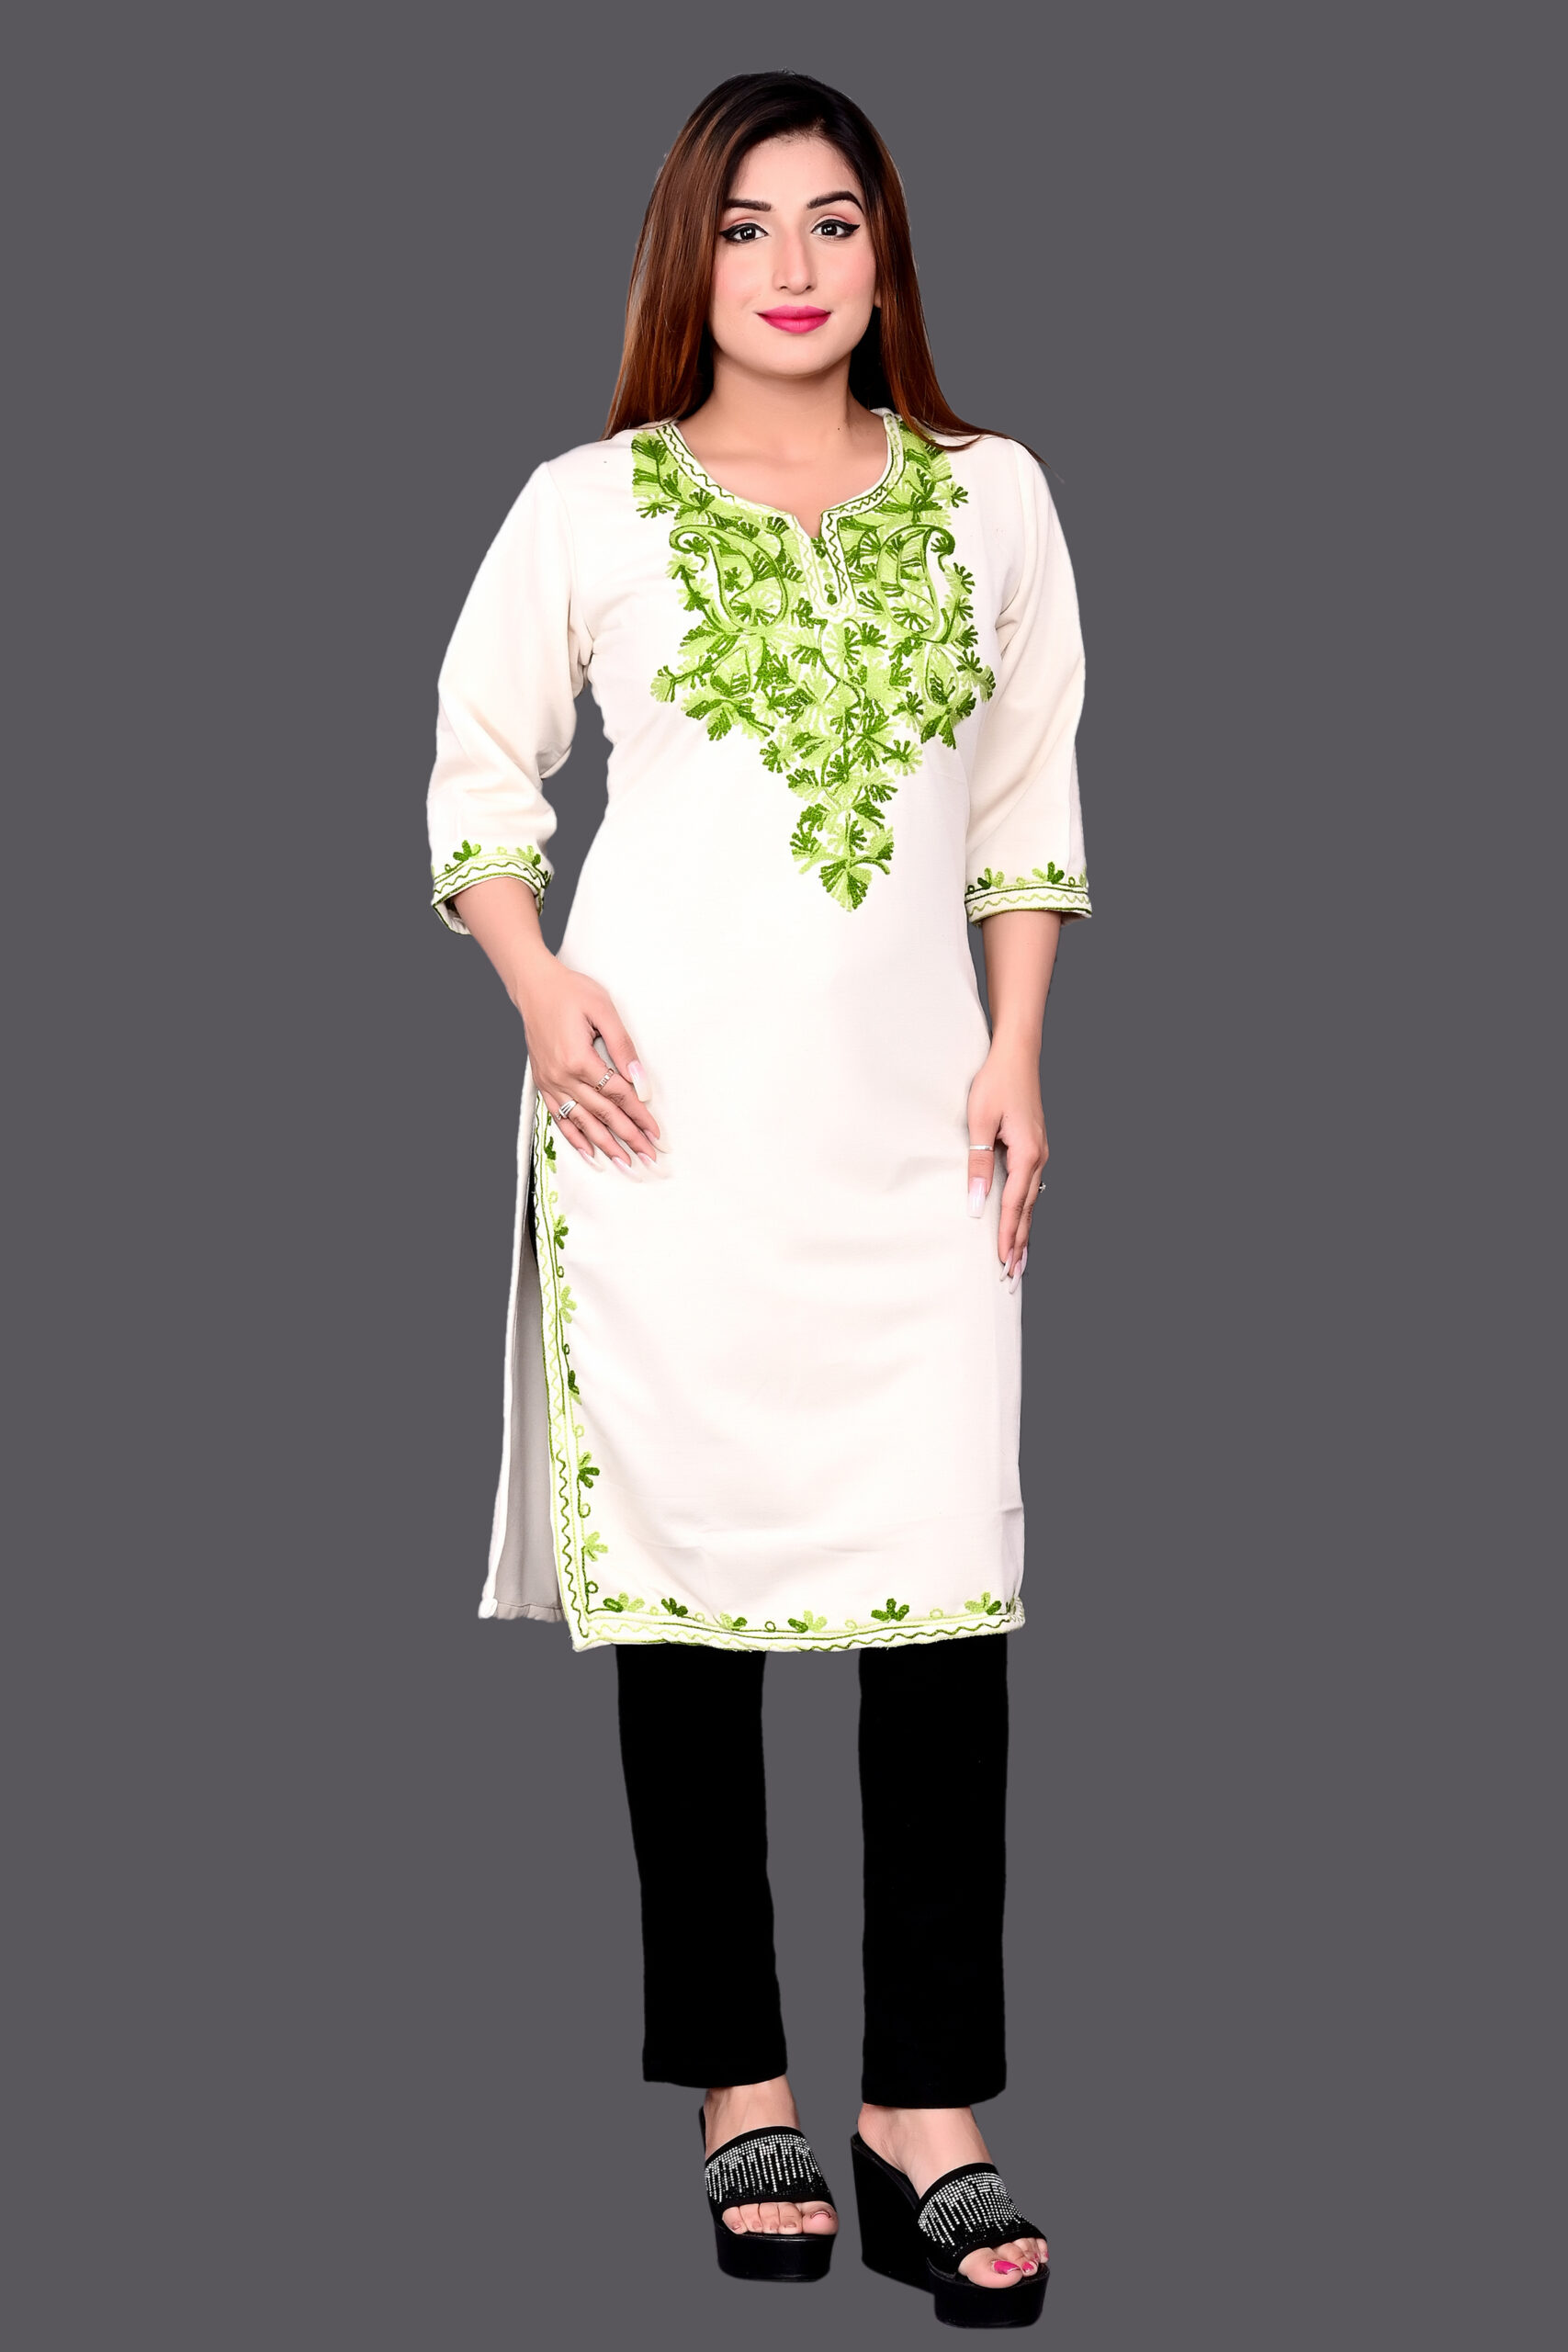 Buy latest green organza dupatta designs for women | Priya Chaudhary